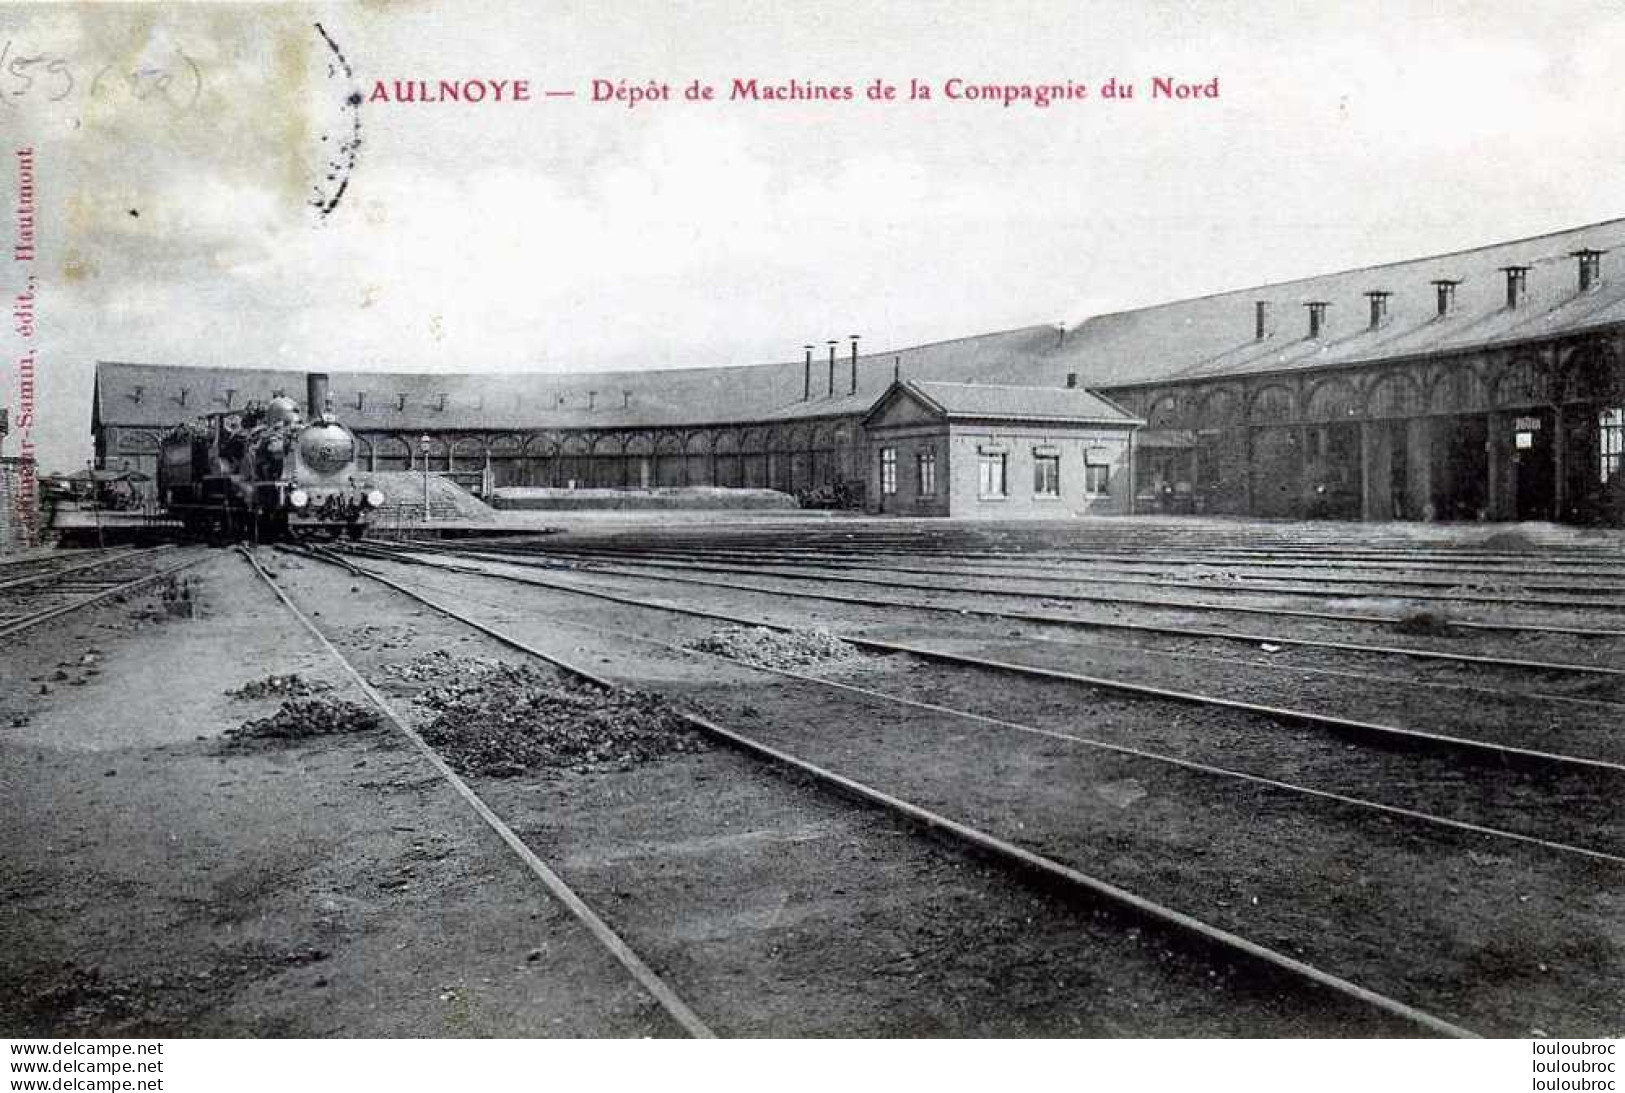 59 AULNOYE DEPOT DE MACHINES DE LA COMPAGNIE DU NORD - Aulnoye